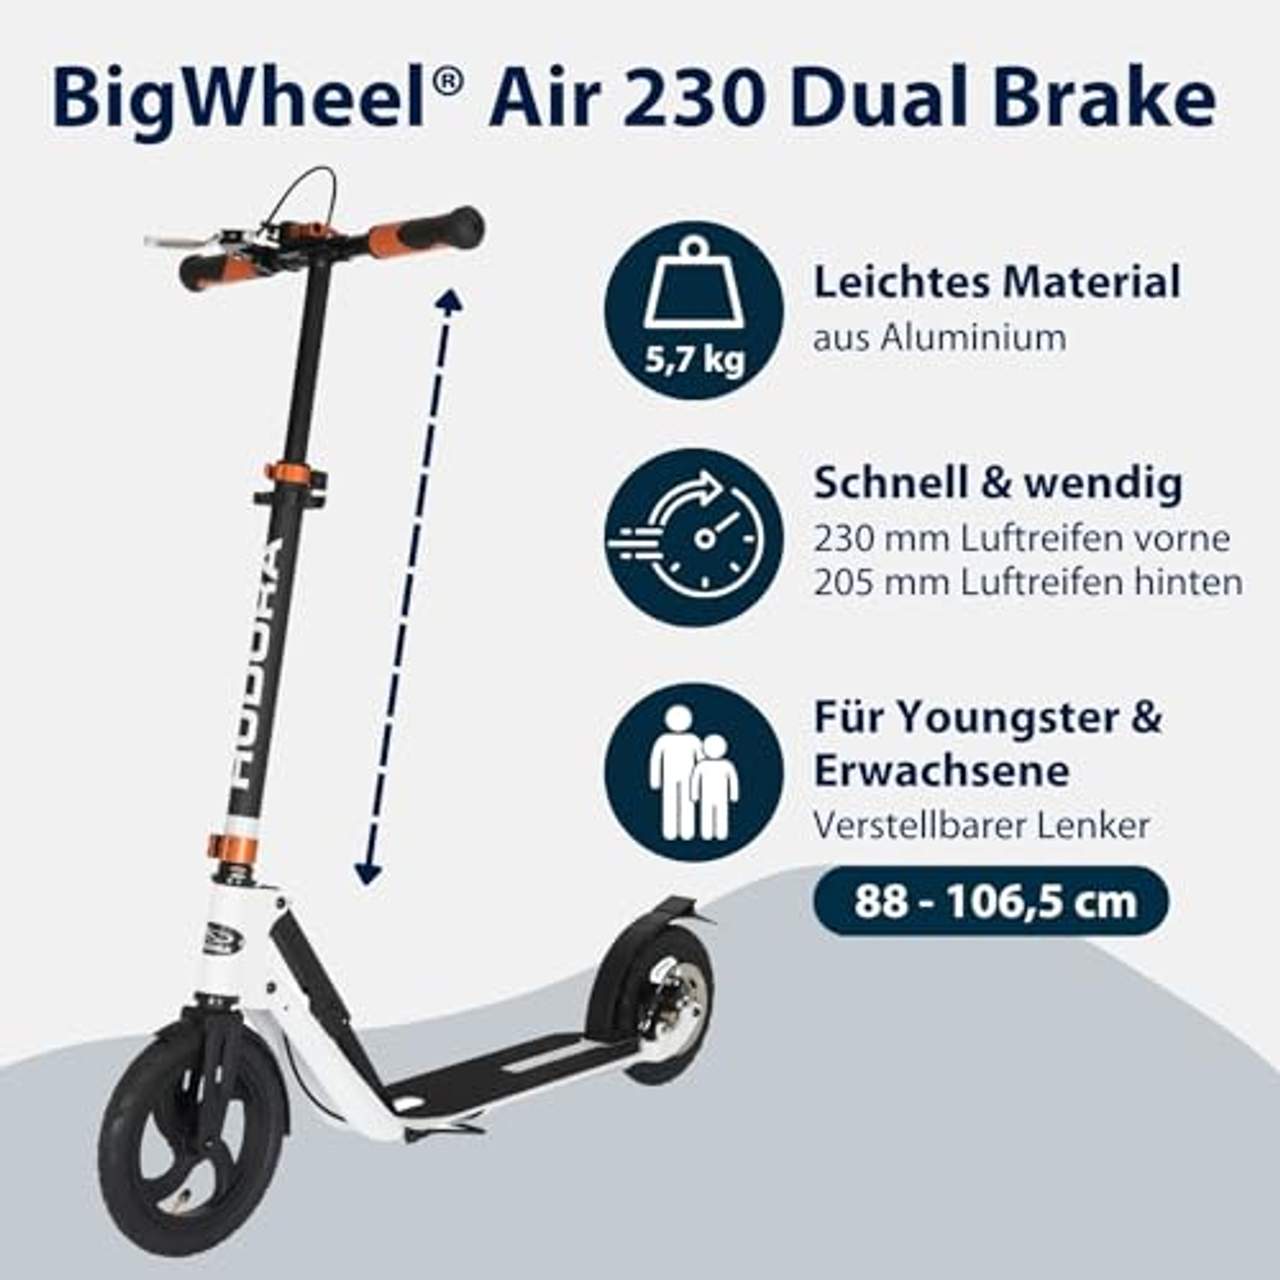 HUDORA 14035 BigWheel Air Dual Brake 205 Luftreifen-Scooter